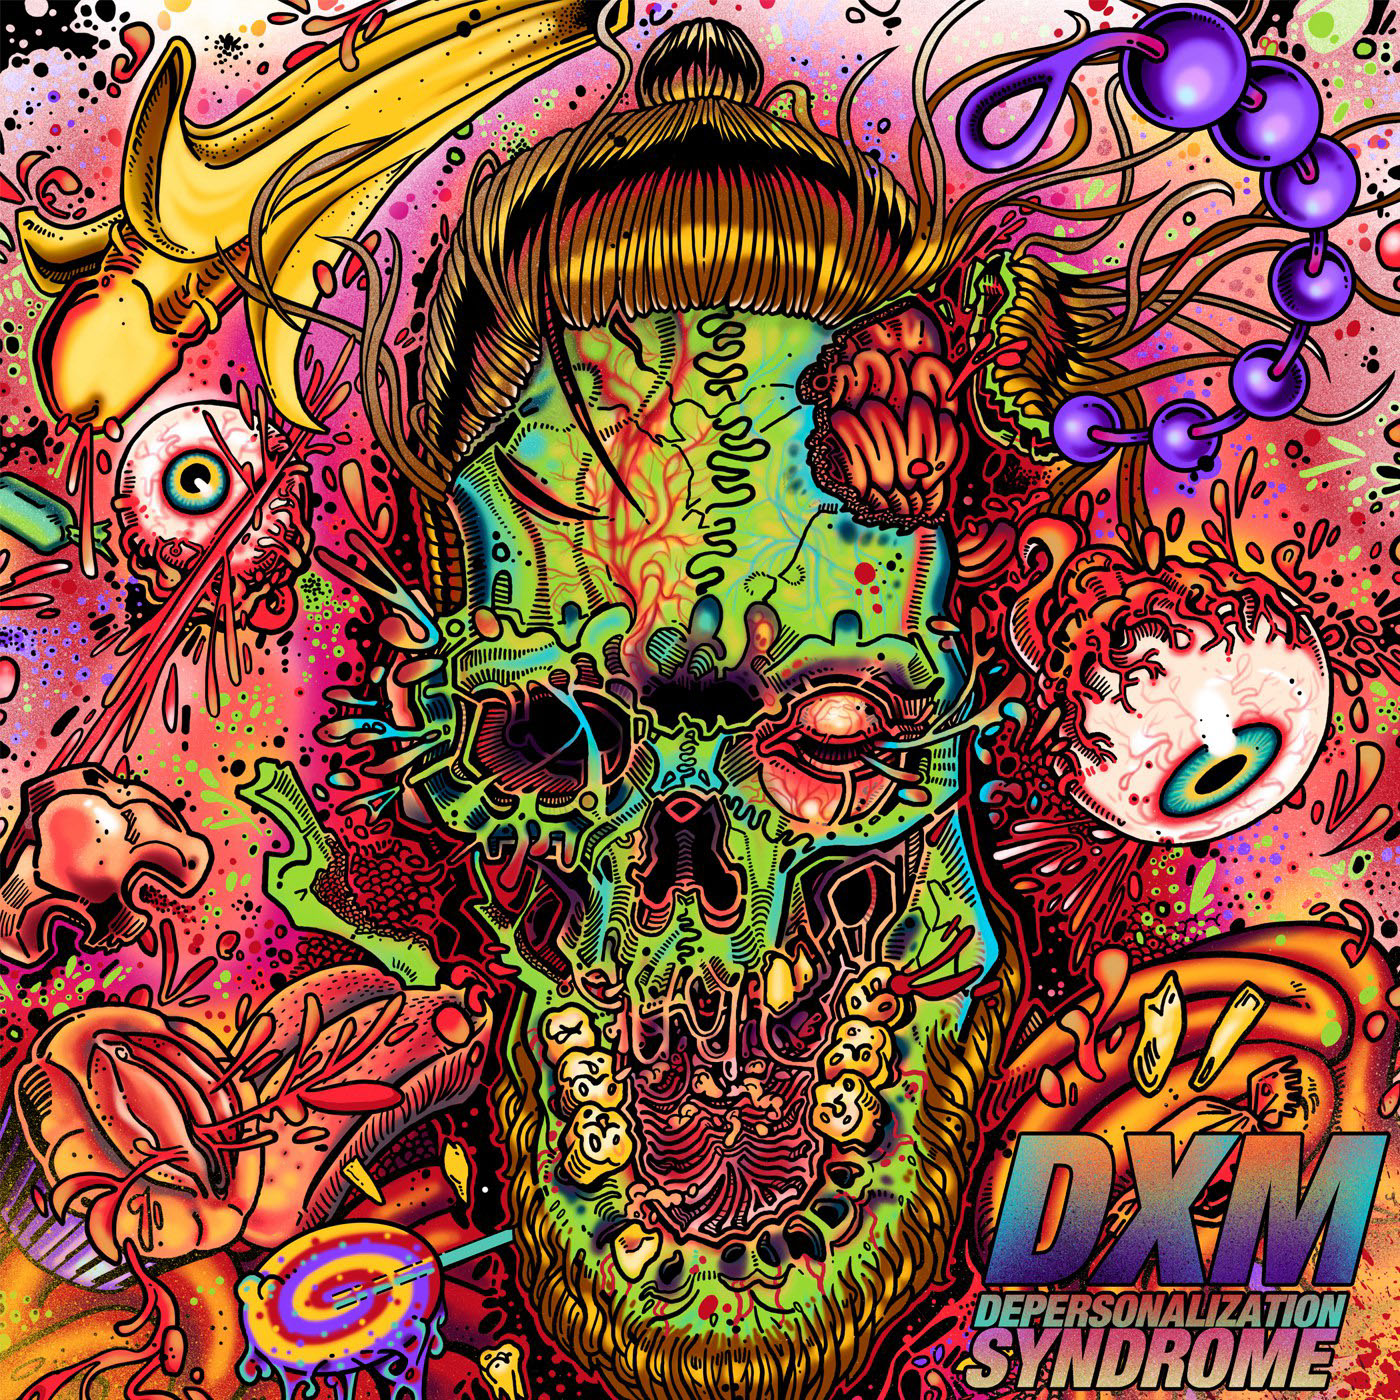 art koksma design illustration album cover melting skull metal music bdsm eye splash splatter acid